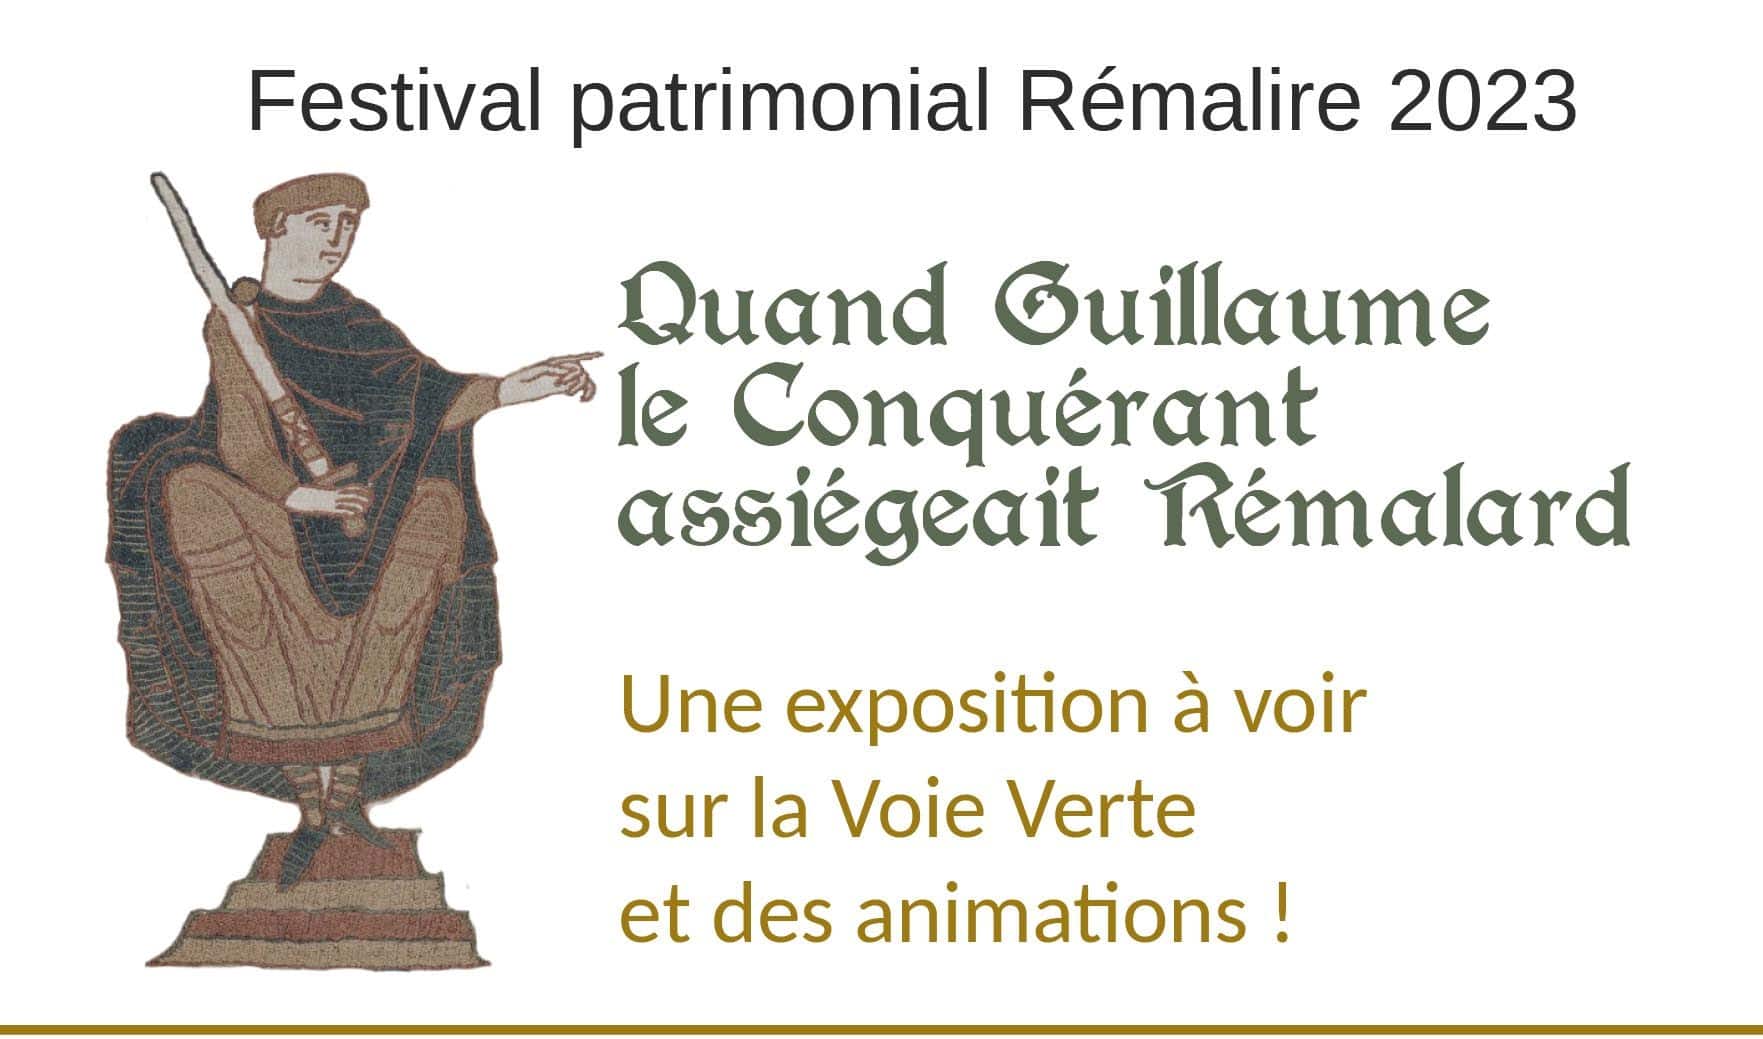 Bandeau Rémalire 2023, Guillaume Le Conquérant